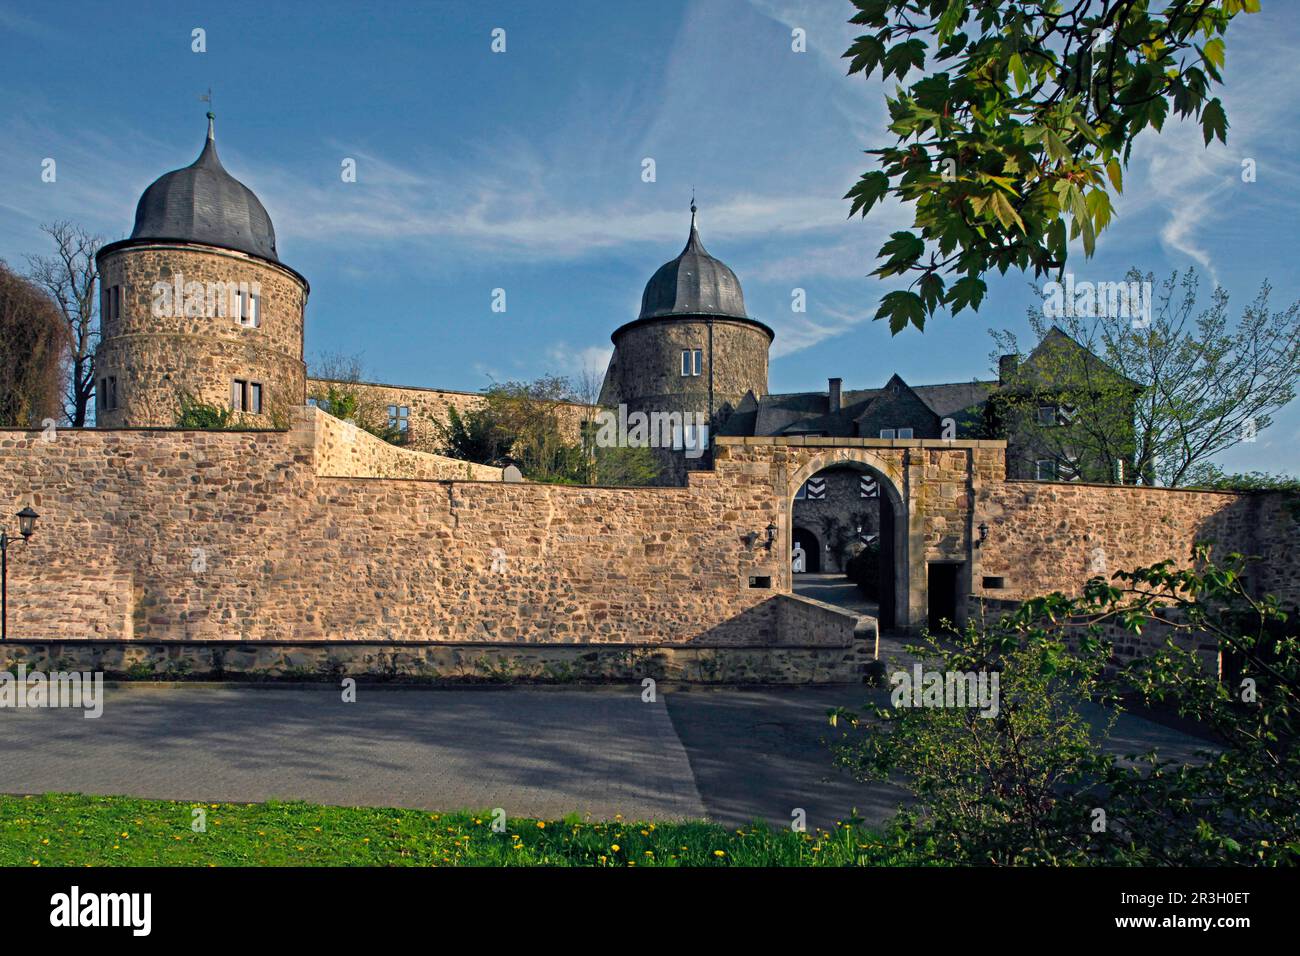 Sababurg, popolarmente conosciuto come Castello della bellezza addormentata dopo i fratelli Grimm, Hofgeismar, distretto di Kassel, Assia, Zappenburg, Zapfenburg, dorme Foto Stock